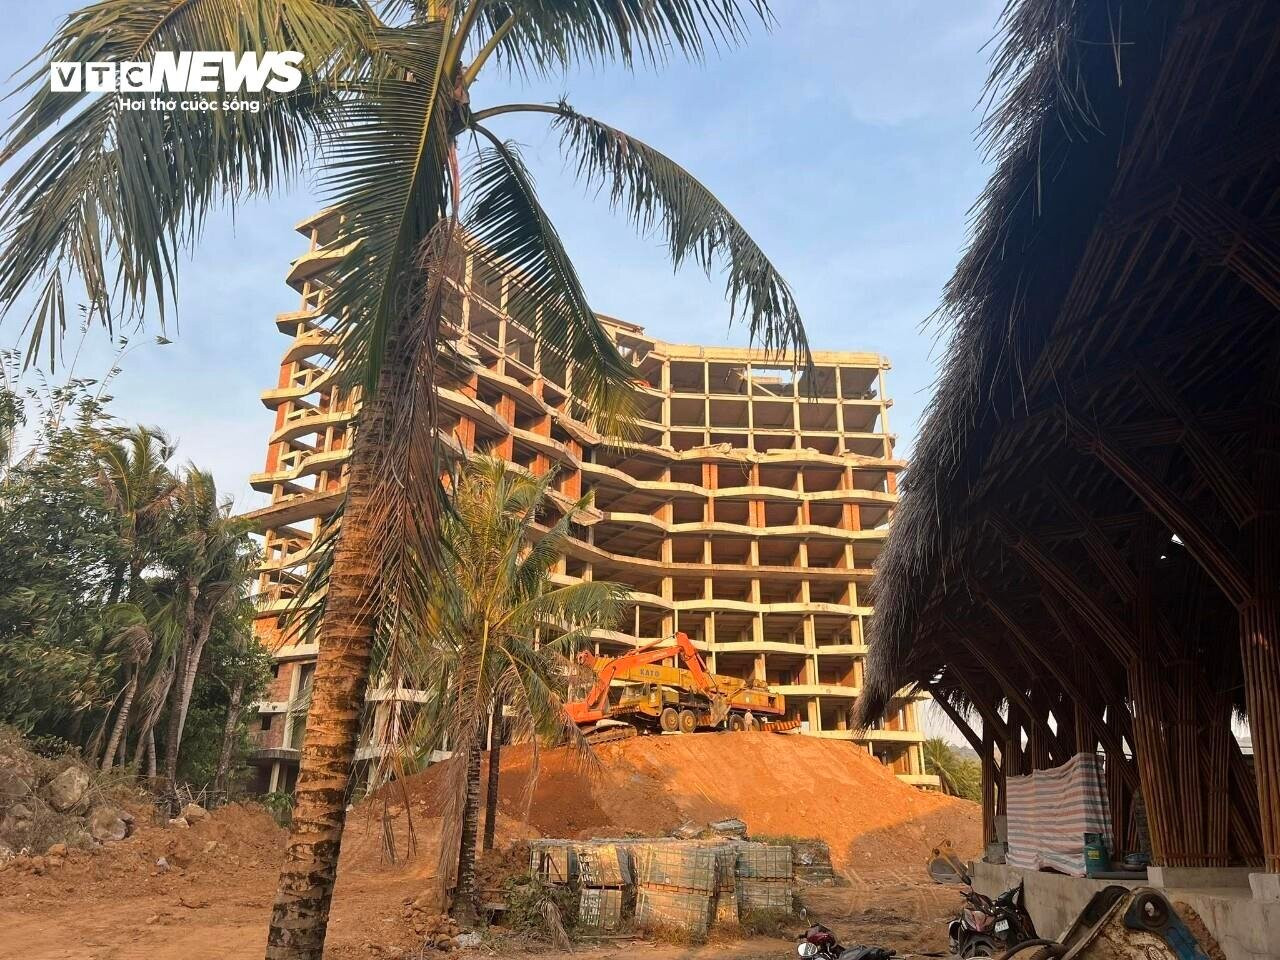 Theo ông Vũ Mạnh Hùng, chi phí xây dựng công trình khách sạn 12 tầng này đã tốn khoảng 100 tỷ đồng .Thời gian dự kiến hoàn thành việc tháo dỡ trả lại hiện trạng là 3 tháng.